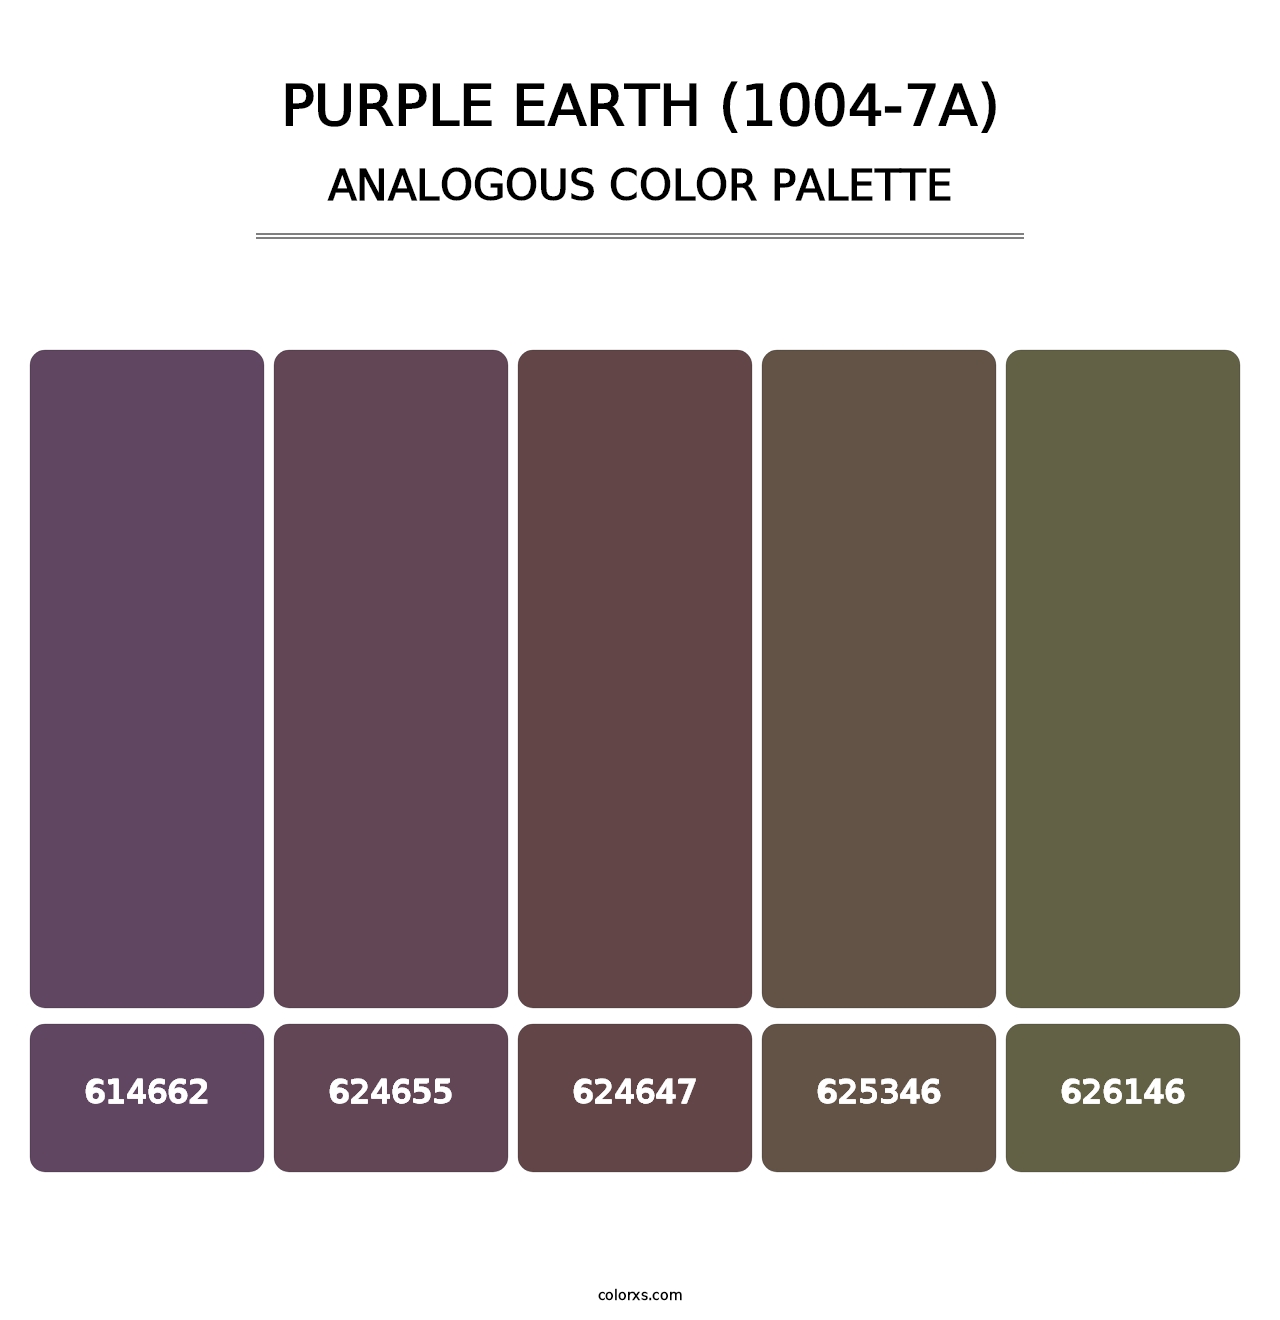 Purple Earth (1004-7A) - Analogous Color Palette